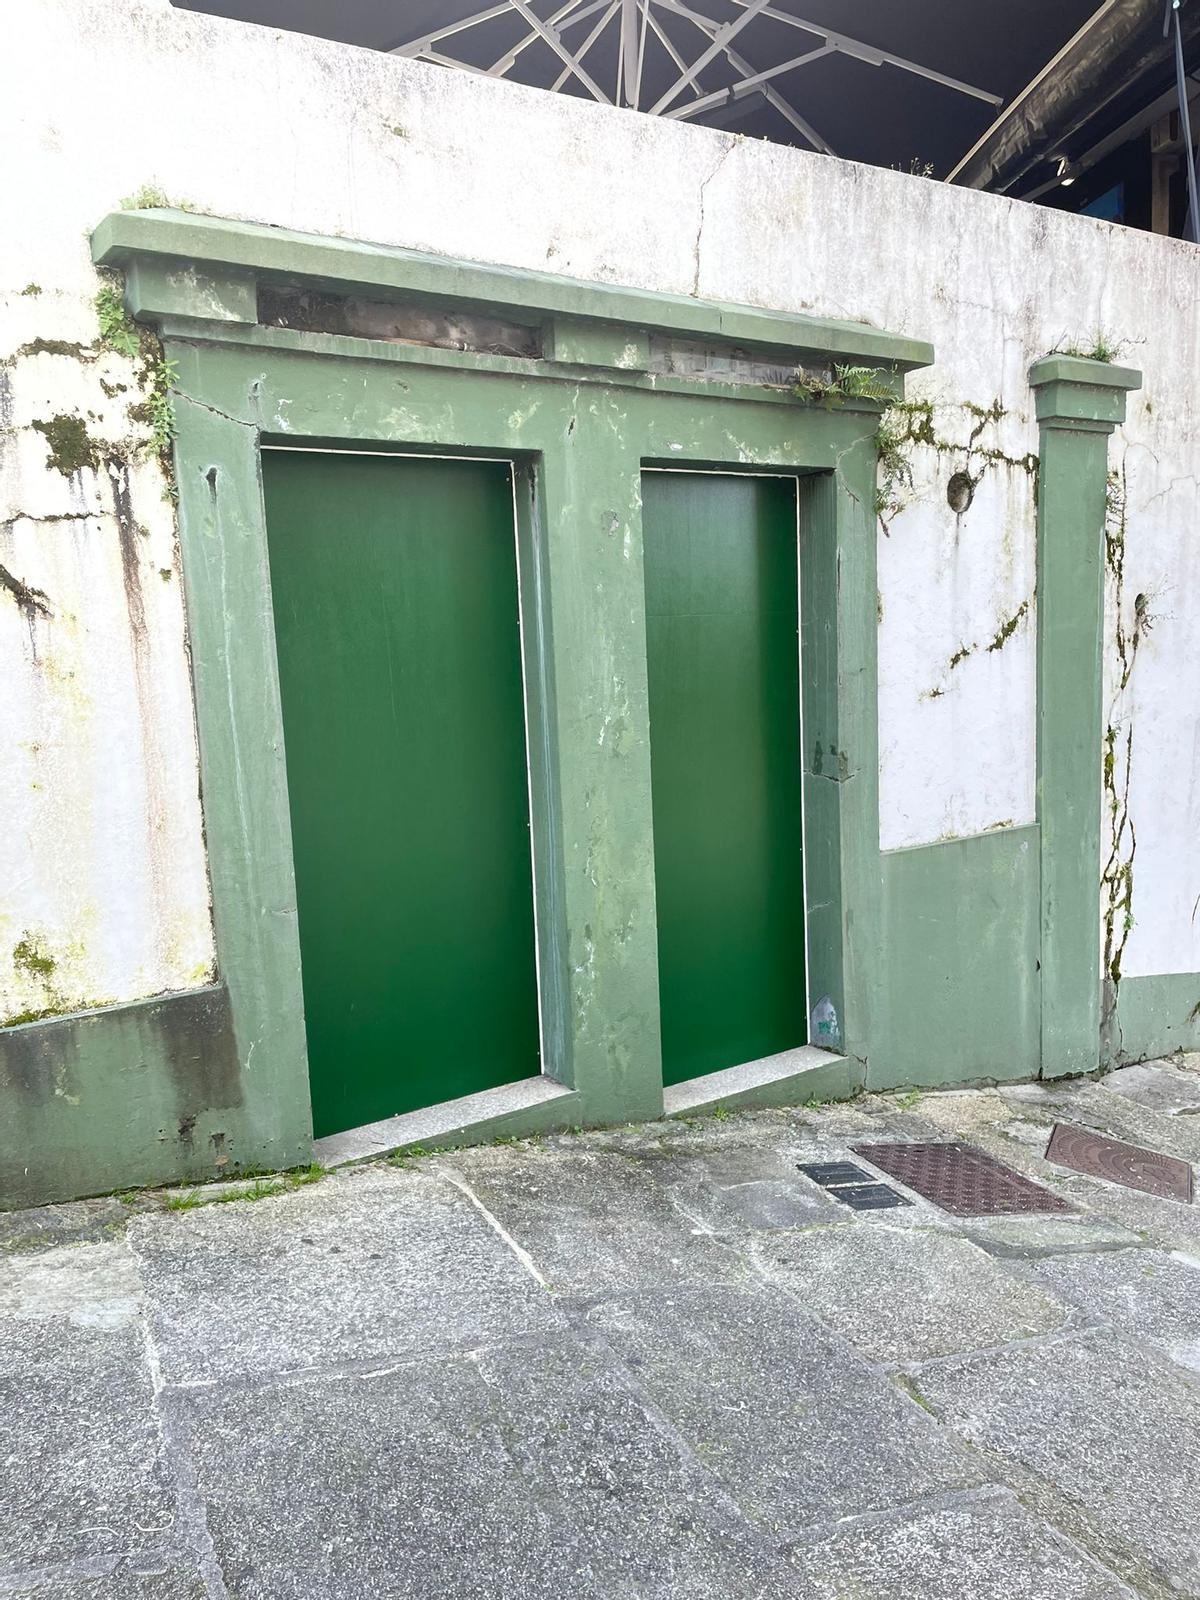 Imagen facilitada por el Concello con las puertas de los baños reparadas.